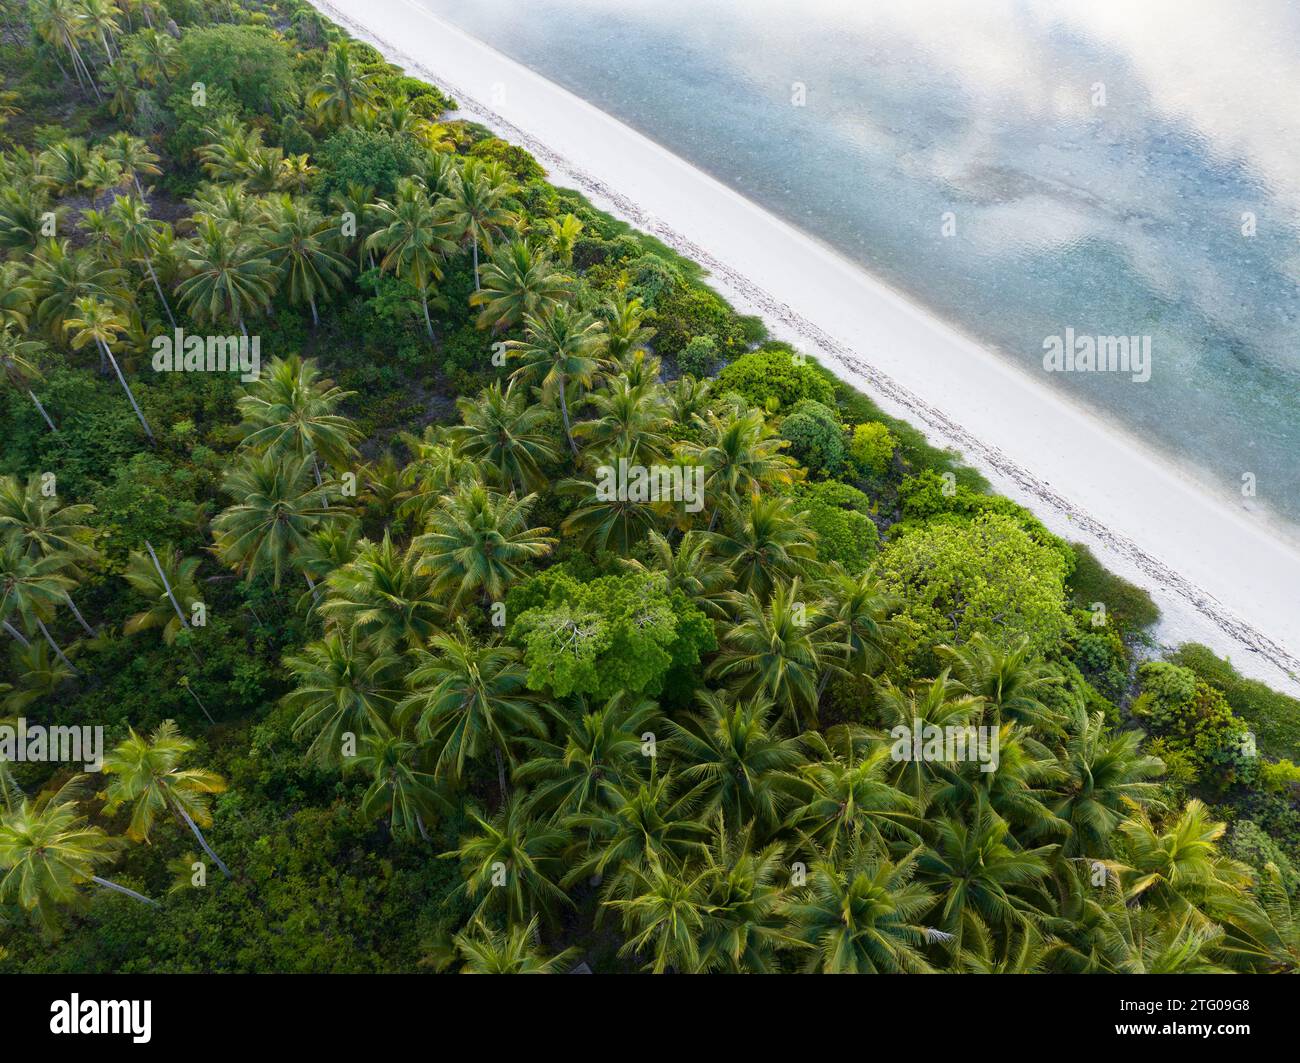 Le palme crescono lungo una spiaggia vuota e idilliaca su un'isola remota in Indonesia. Questa regione ha decine di migliaia di isole sparsi per il mare. Foto Stock